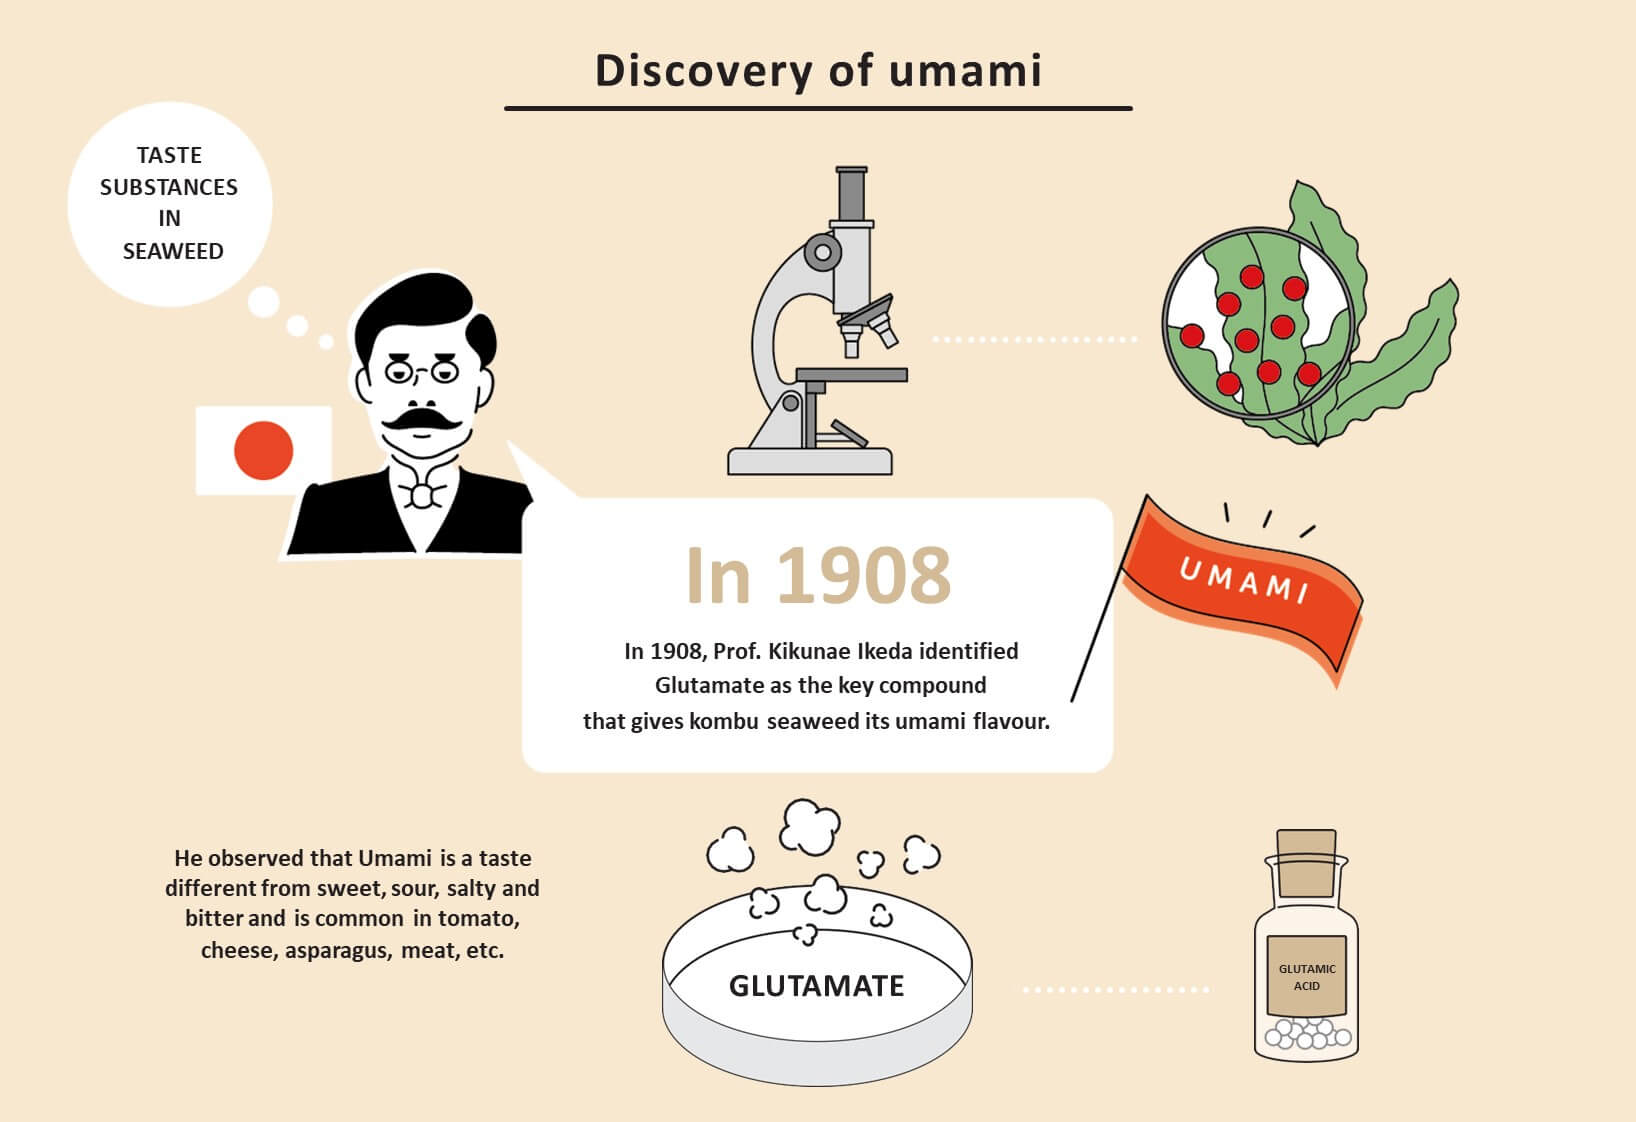 ในปี 1908 ศาสตราจารย์ Kikunae Ikeda ระบุว่ากลูตาเมตเป็นสารประกอบหลักที่ทำให้สาหร่ายคอมบุมีรสอูมามิ